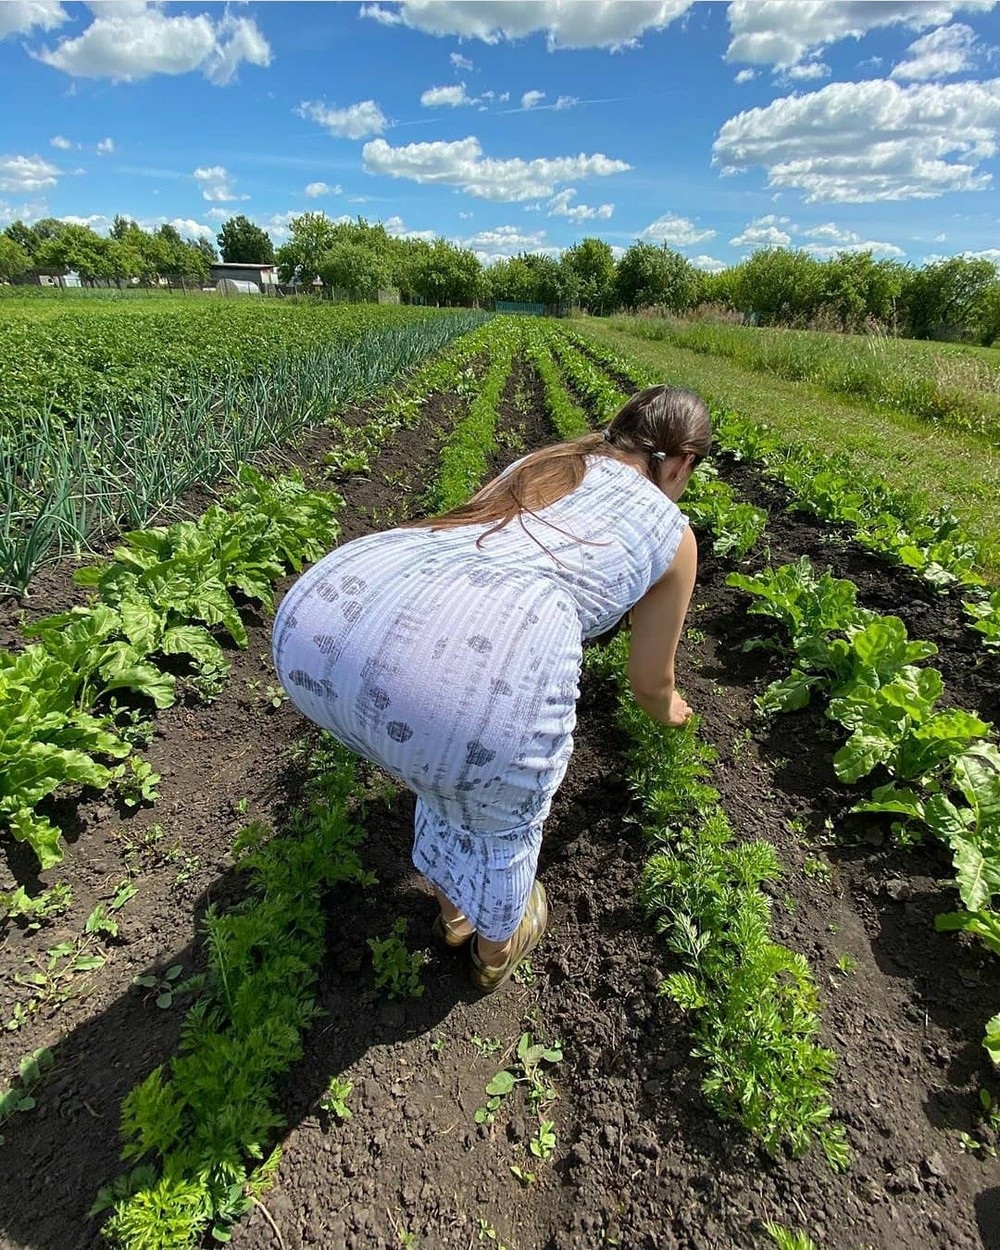 Жена на огороде в халате без трусов (57 фото) - секс и порно заточка63.рф